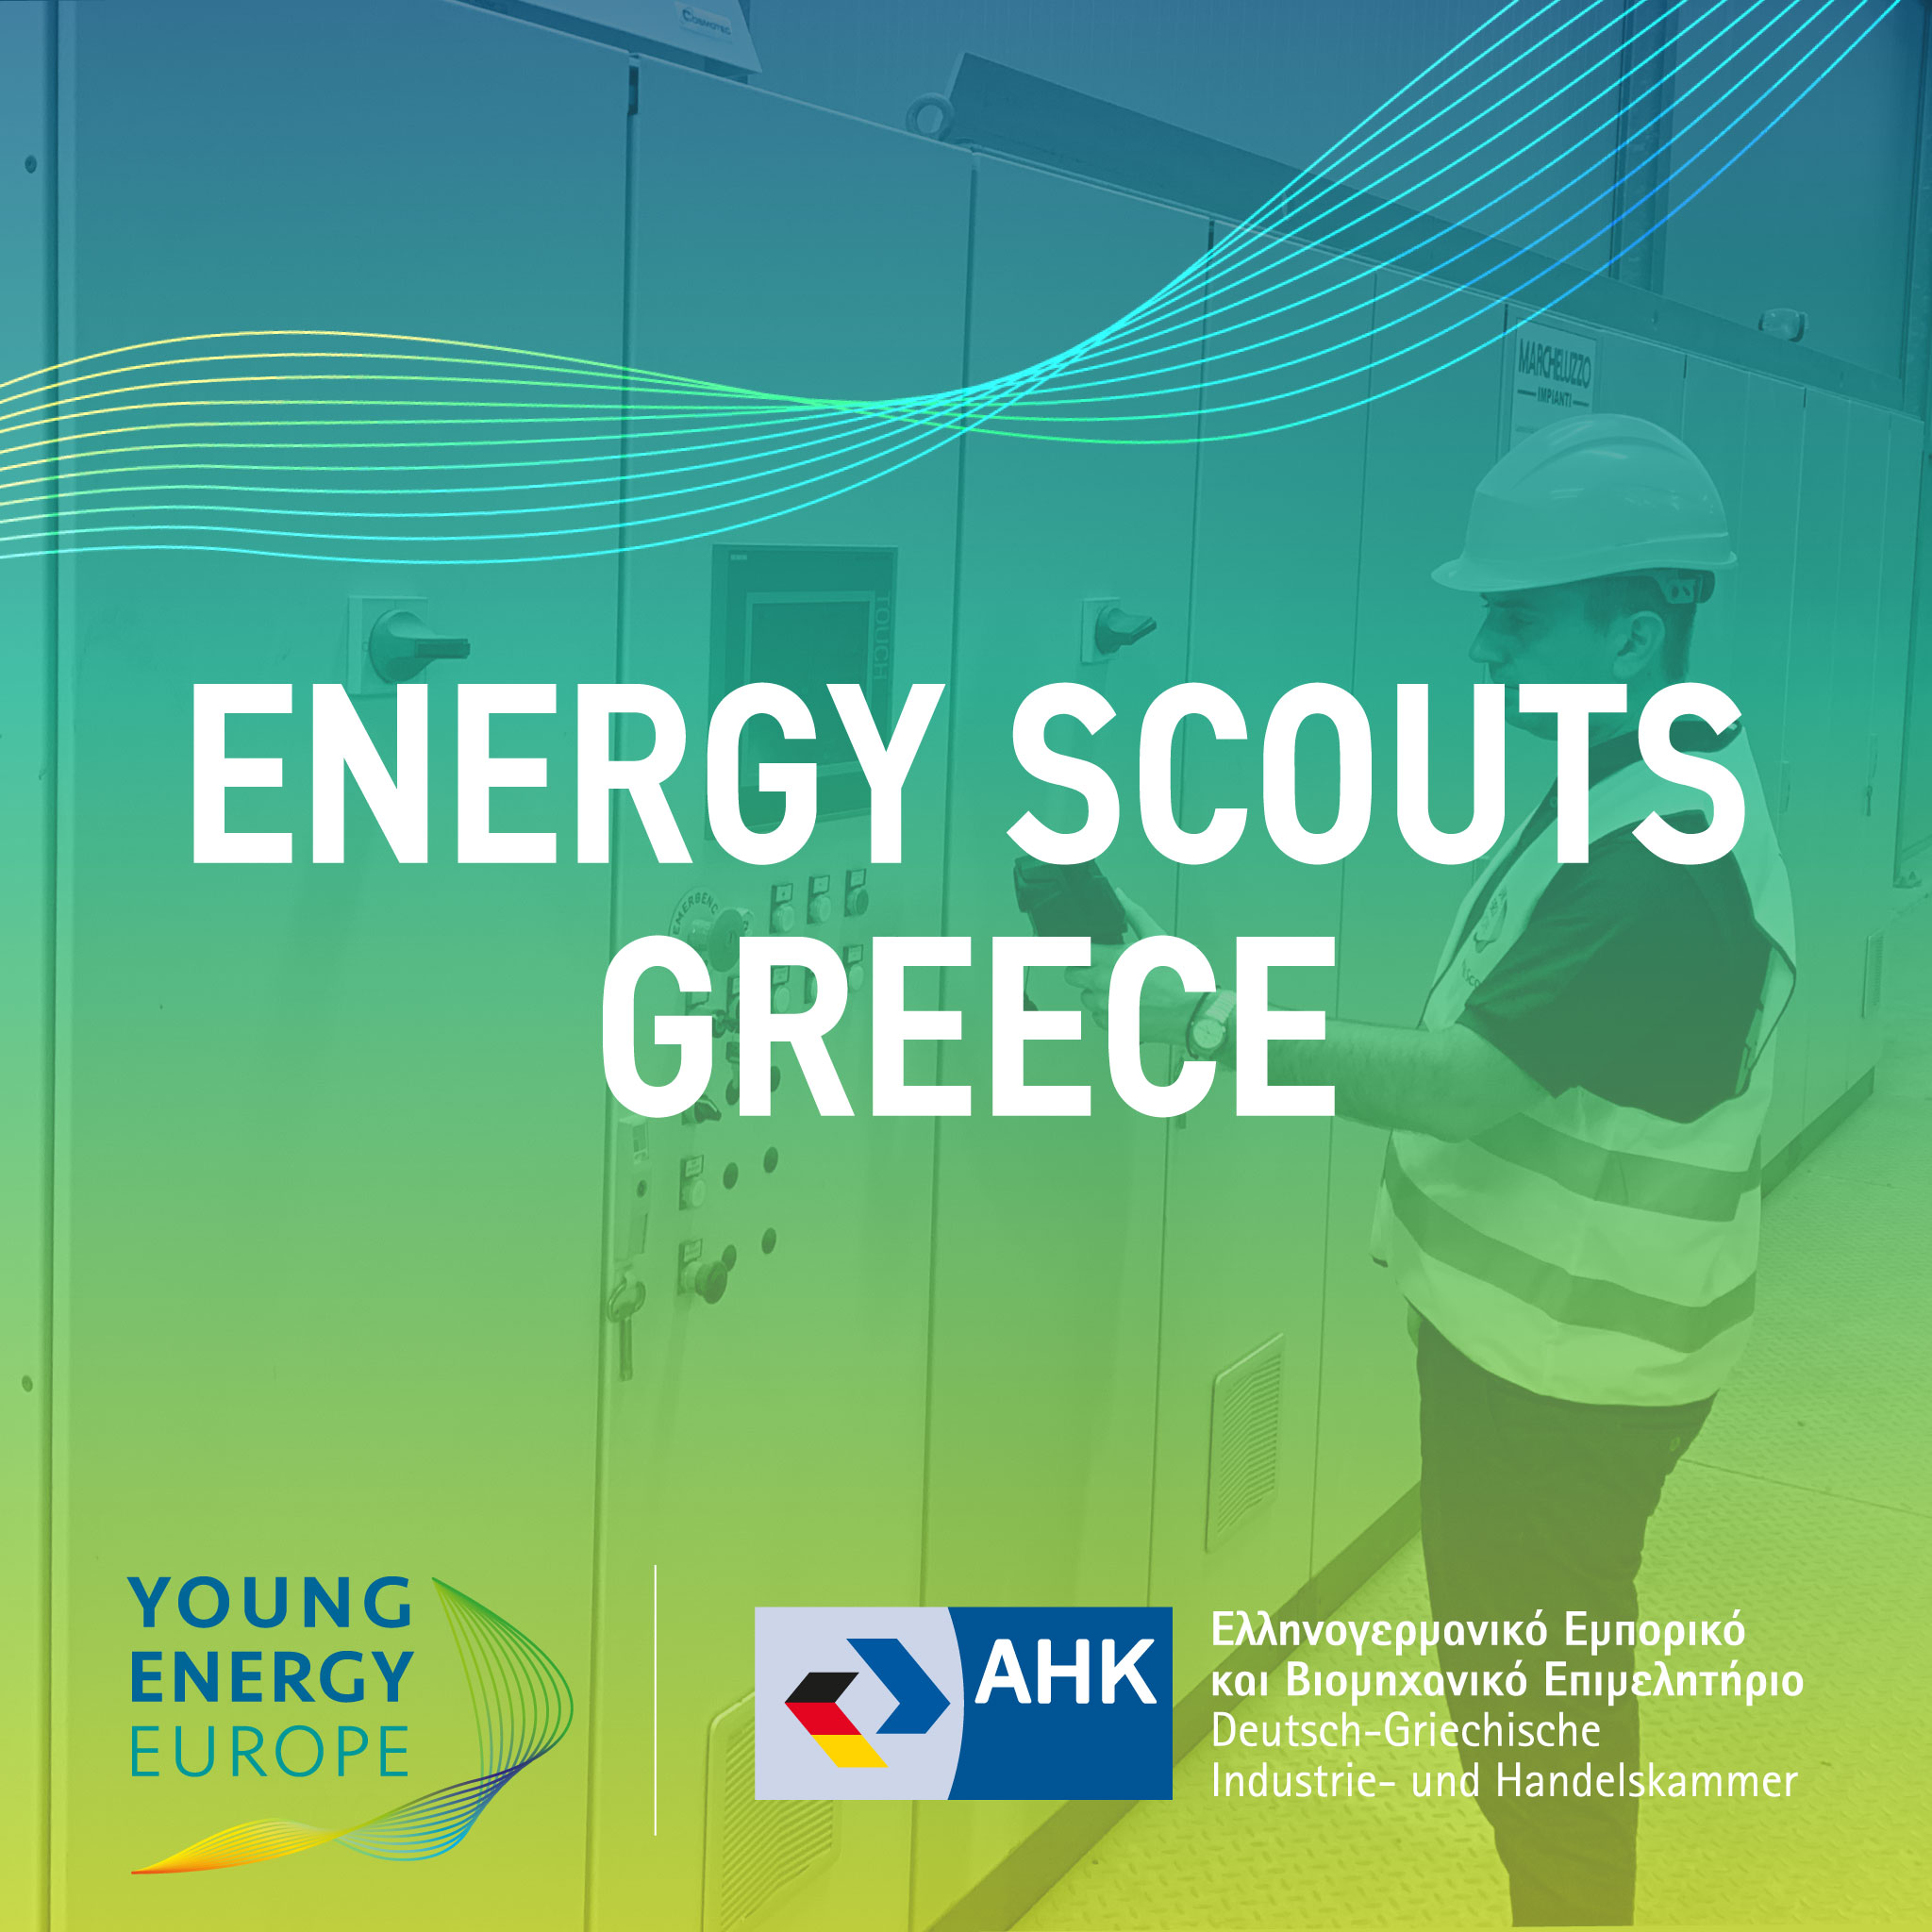 Ελληνογερμανικό Επιμελητήριο 4, 6, 11 και 13 Οκτωβρίου το σεμινάριο «Energy Scouts», για την εξοικονόμηση ενέργειας